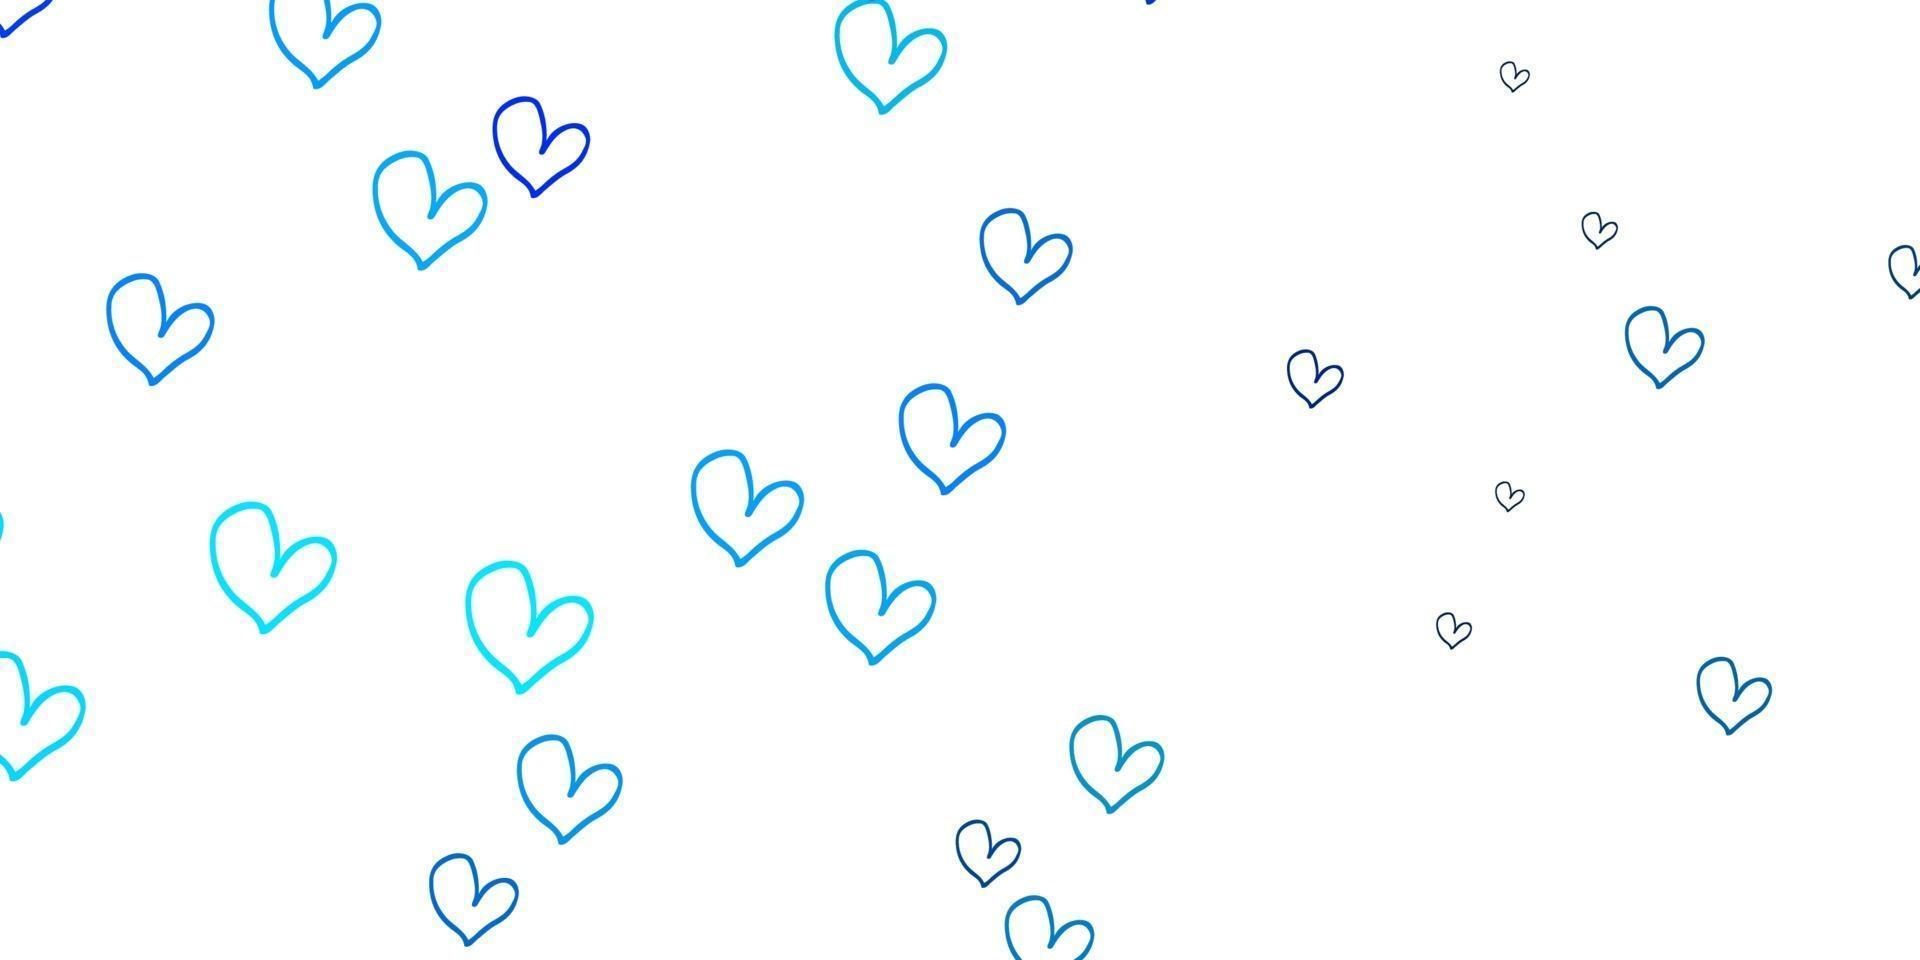 plantilla de vector azul claro con corazones de doodle.